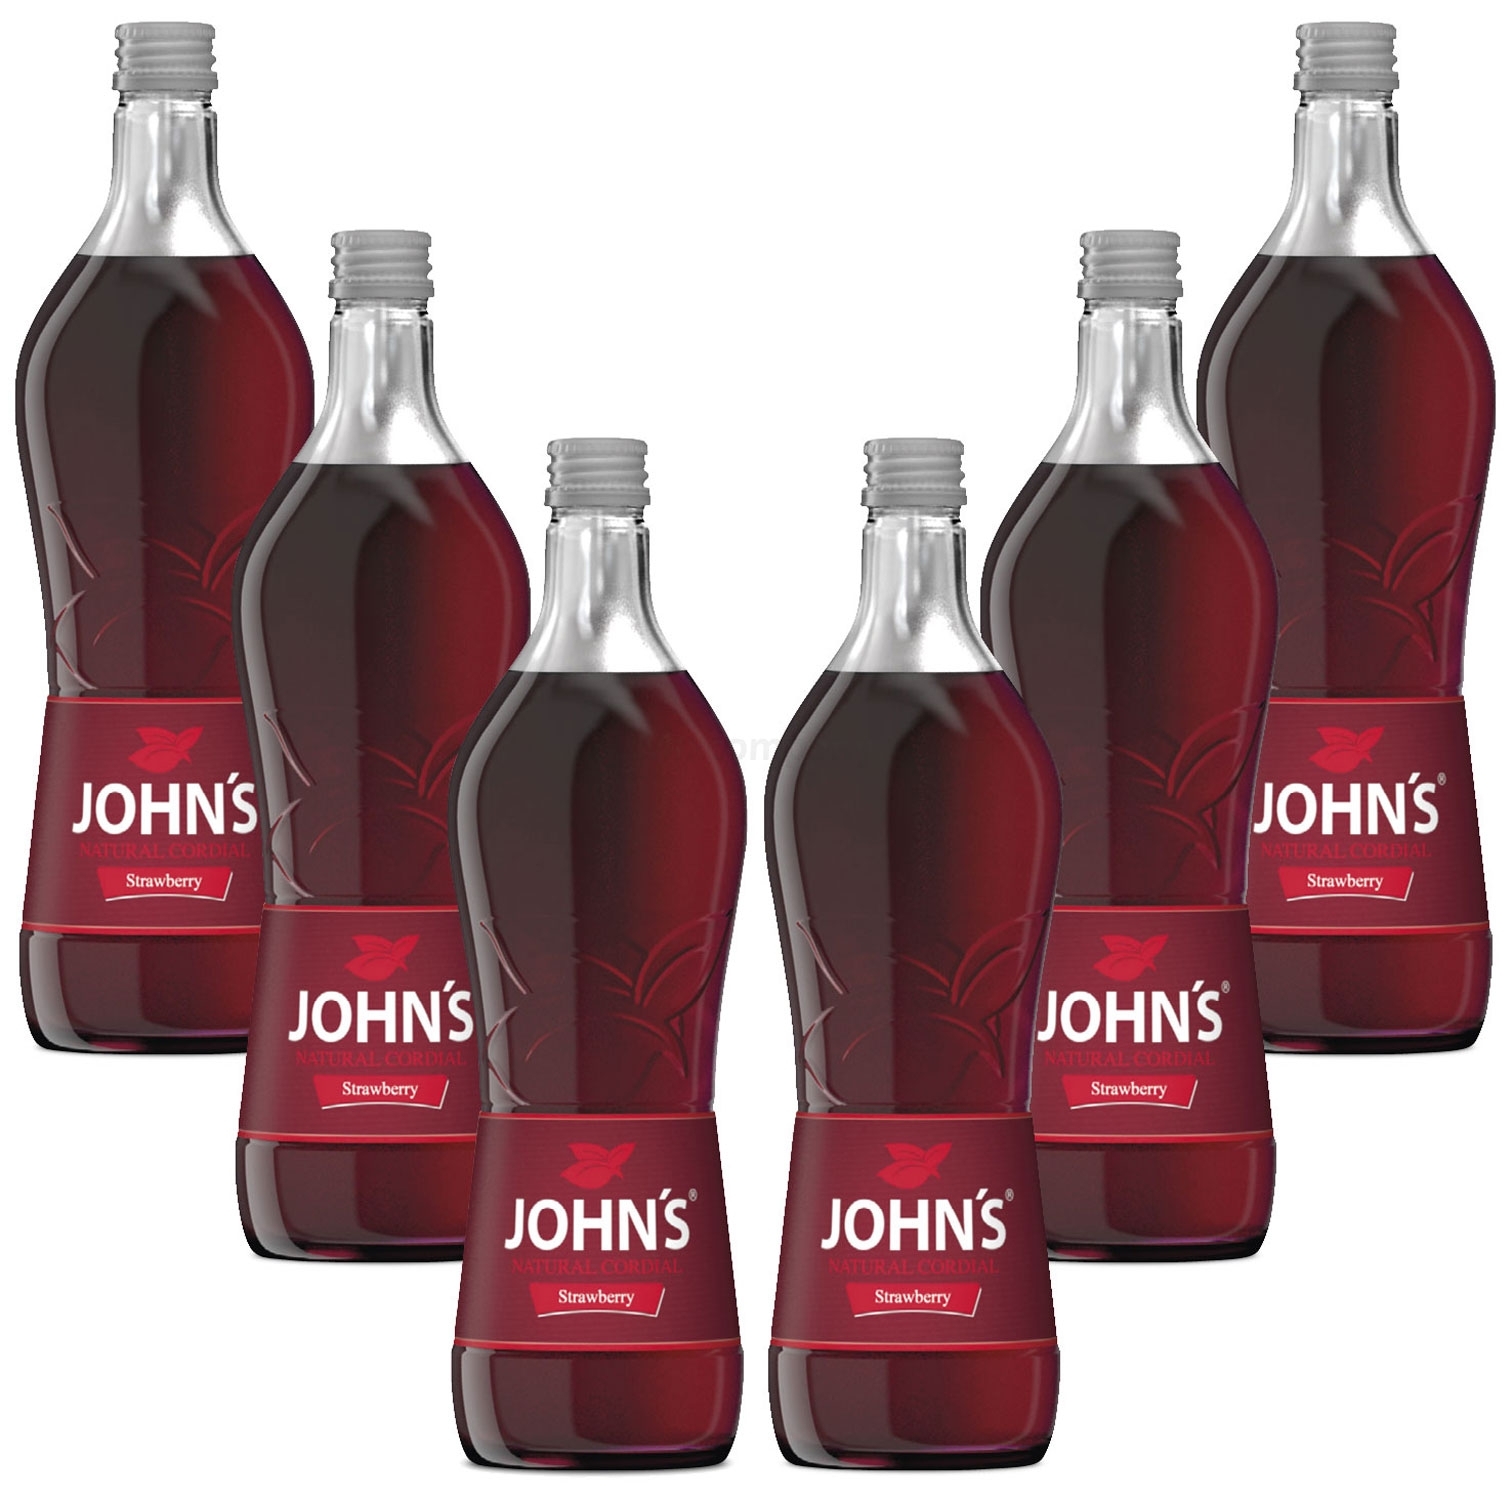 Johns Strawberry / Erdbeere Sirup für Cocktails 6x 0,7l = 4,2 Liter